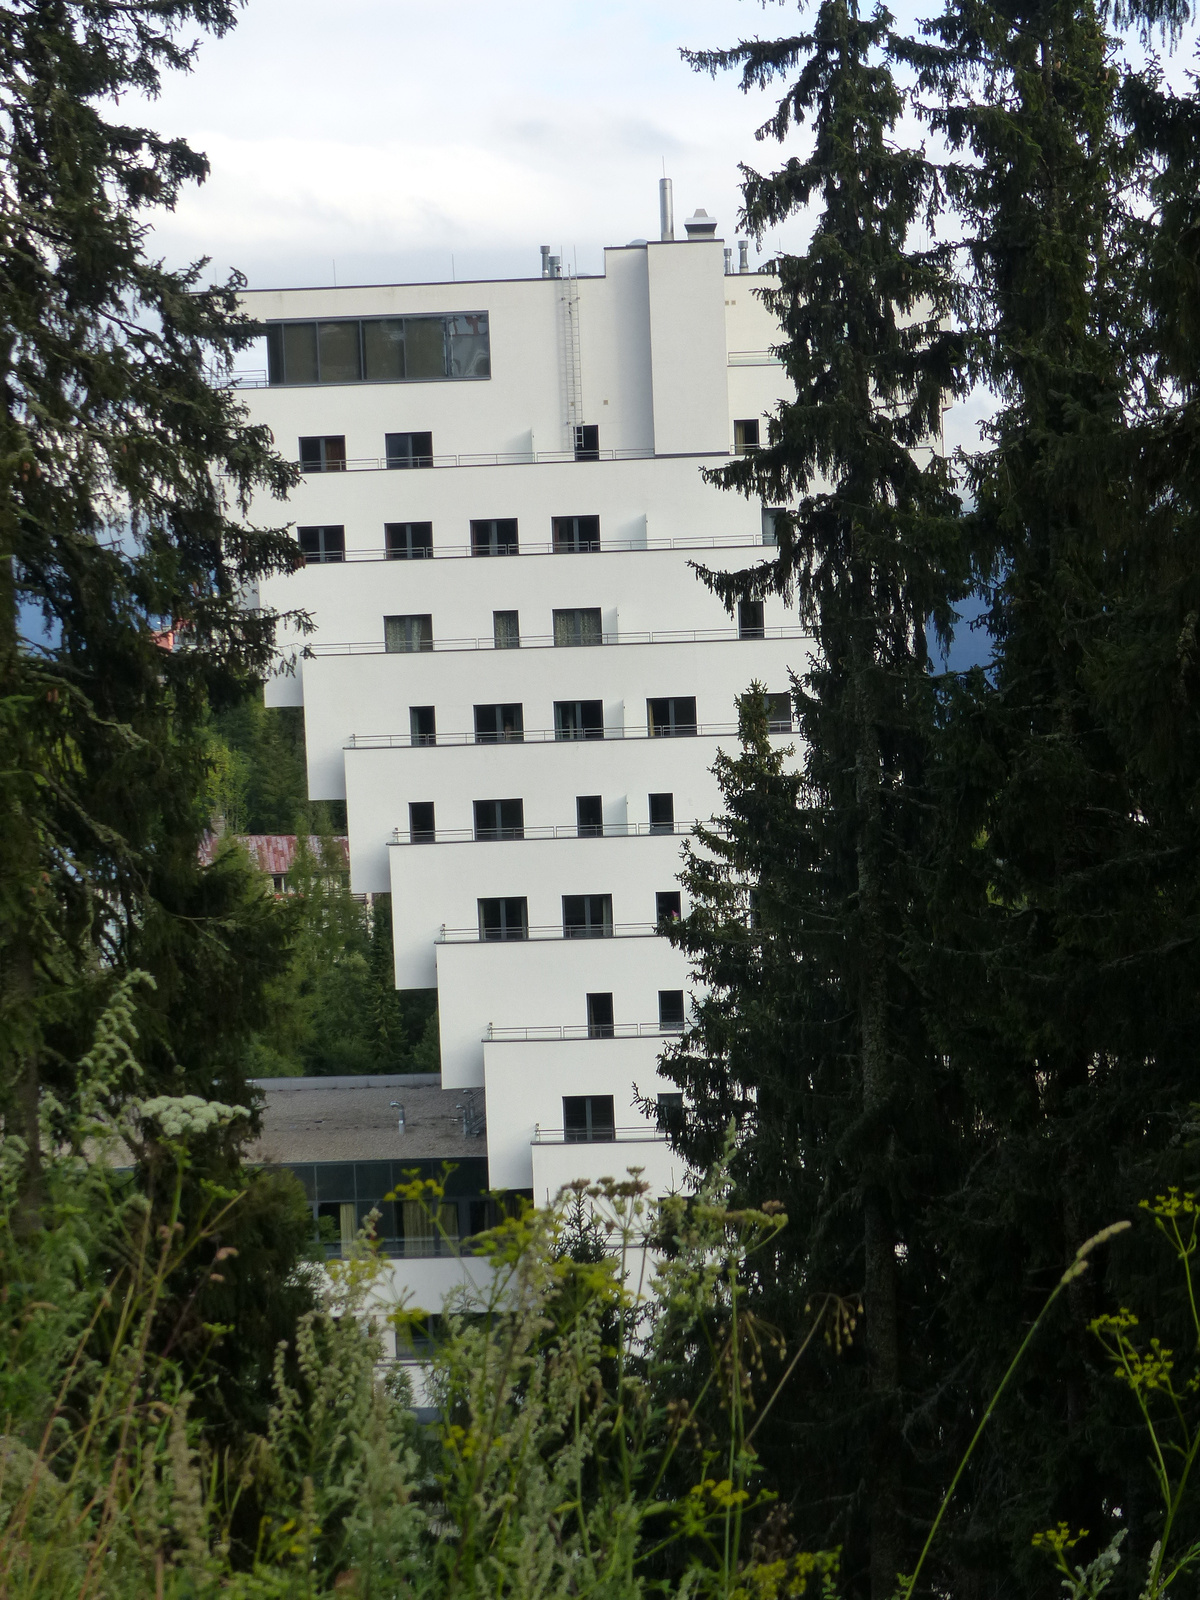 Csorbató (Štrbské Pleso), Hotel Panorama, SzG3